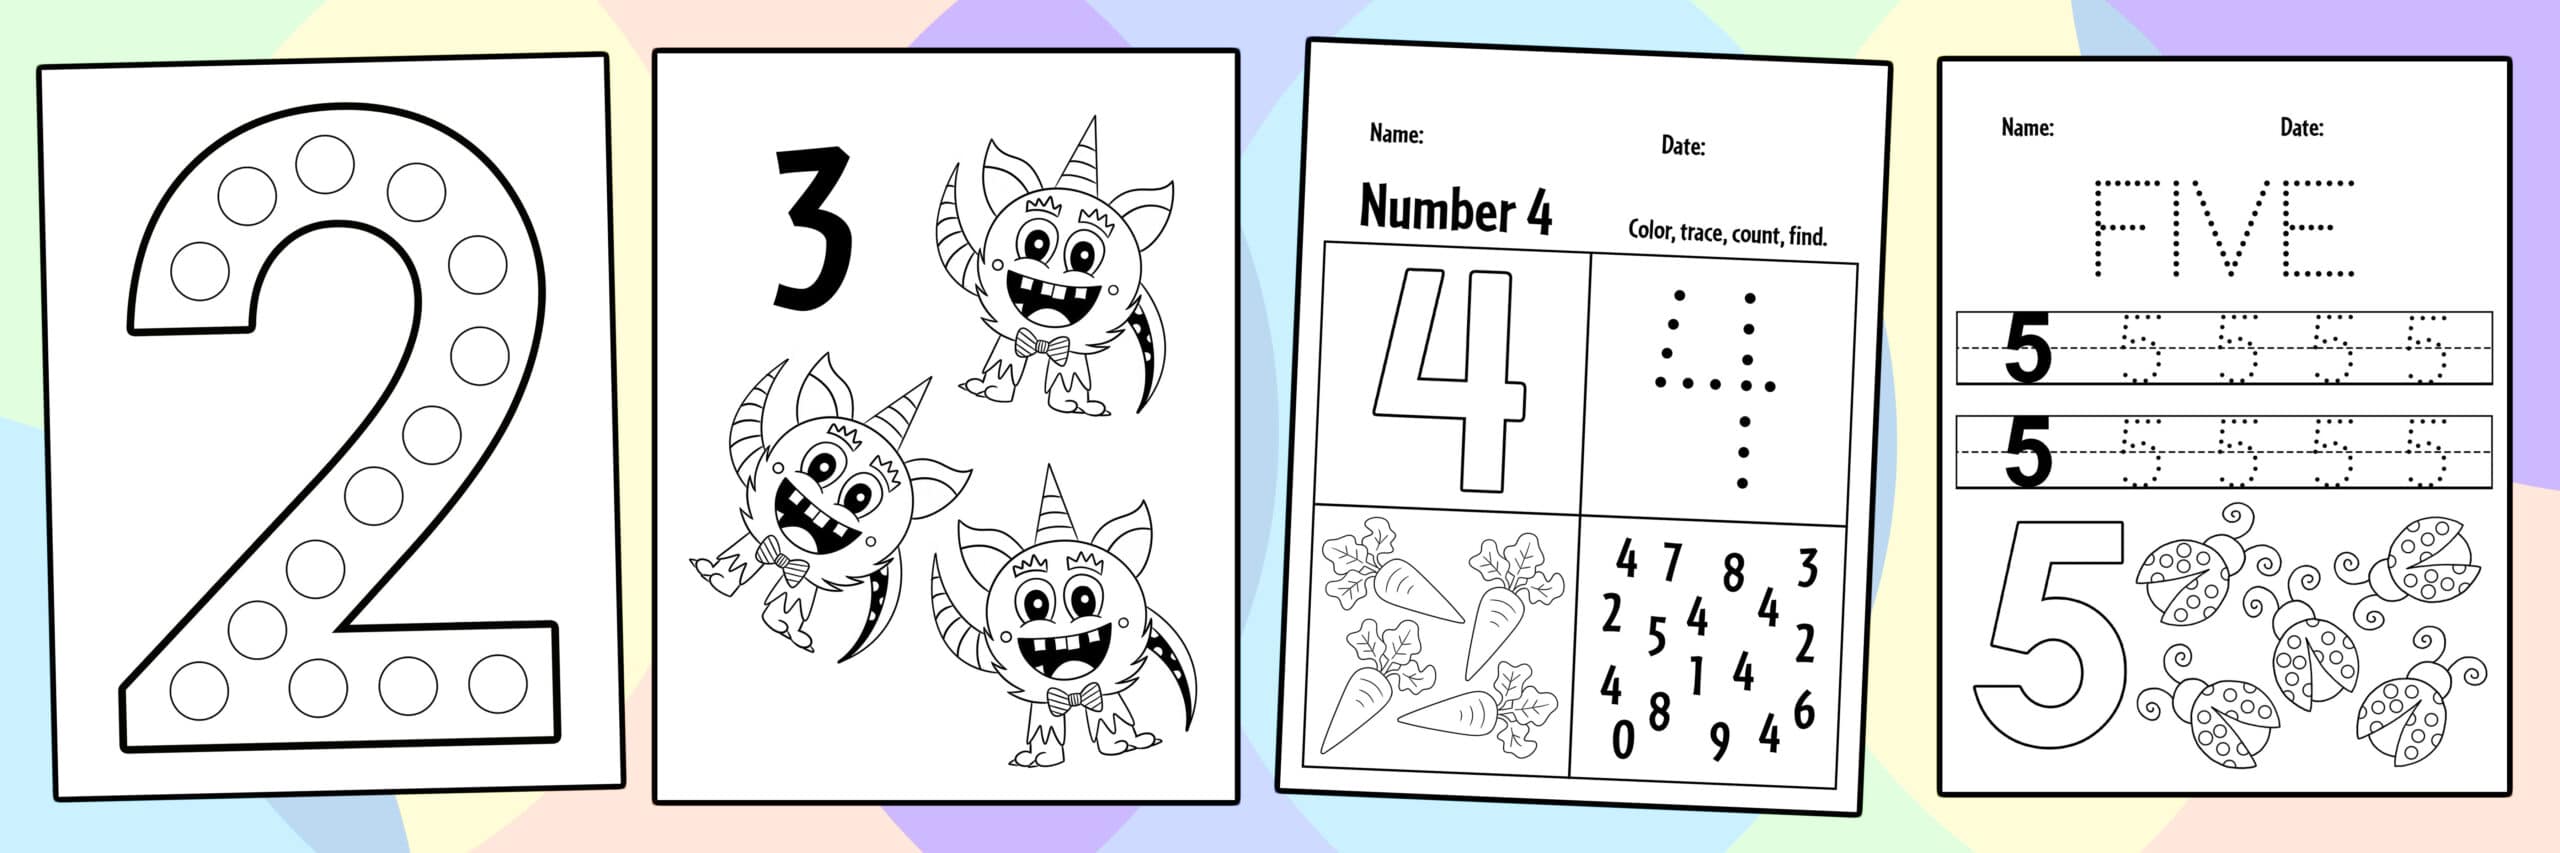 Free math worksheets for preschool â the hollydog blog